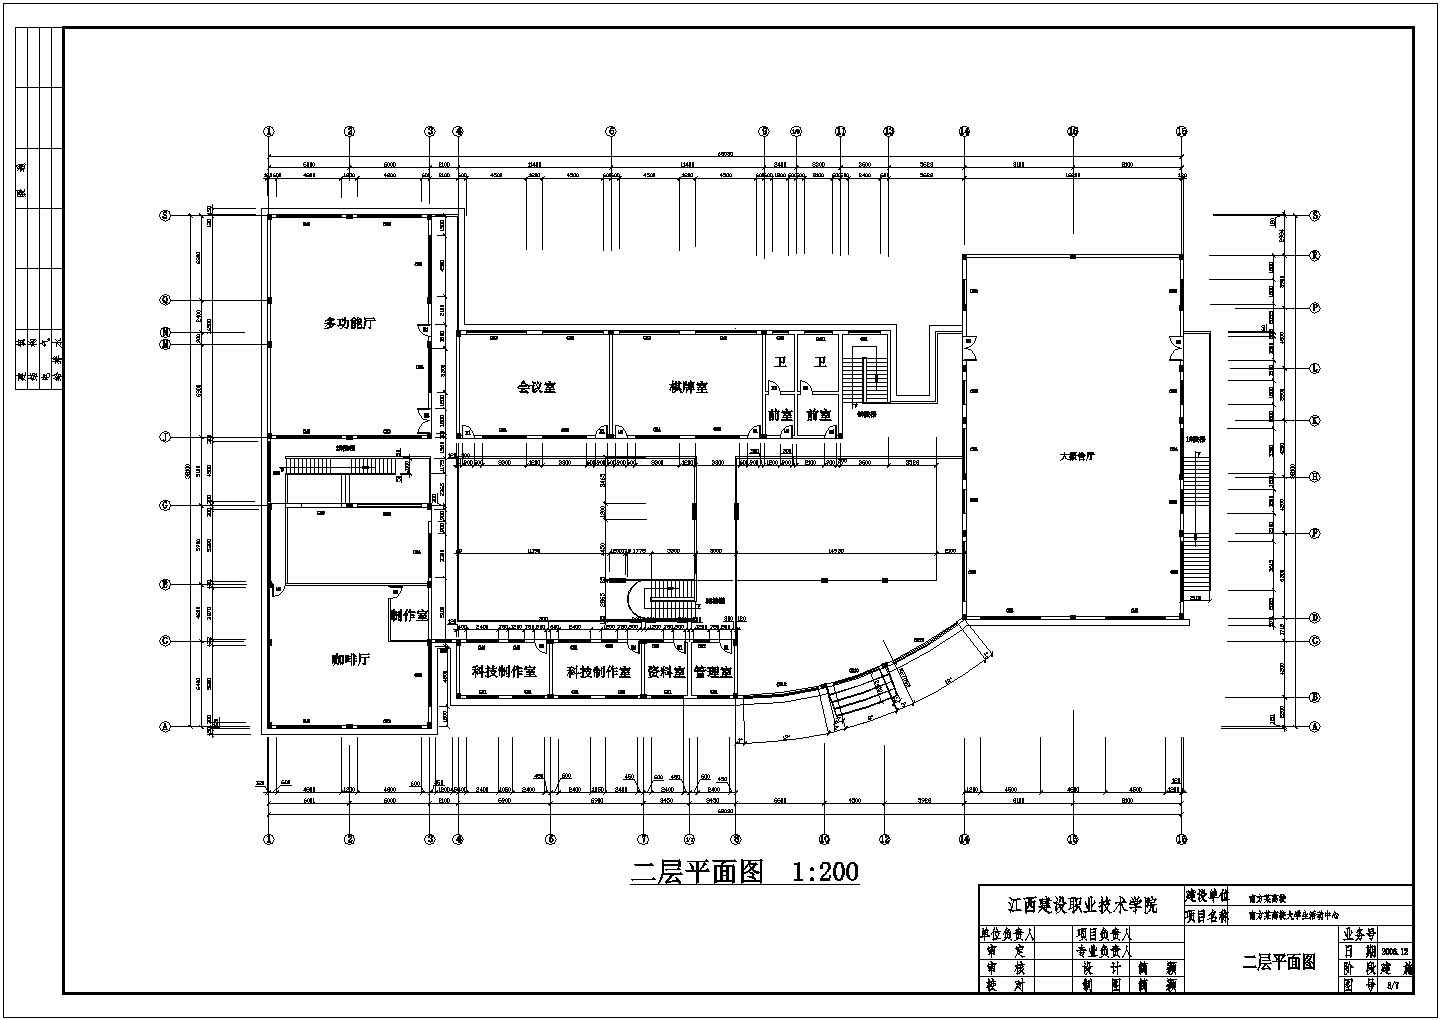 某4层 长80.2米 宽44.2米 地下1层某学院学生活动中心CAD建筑设计图